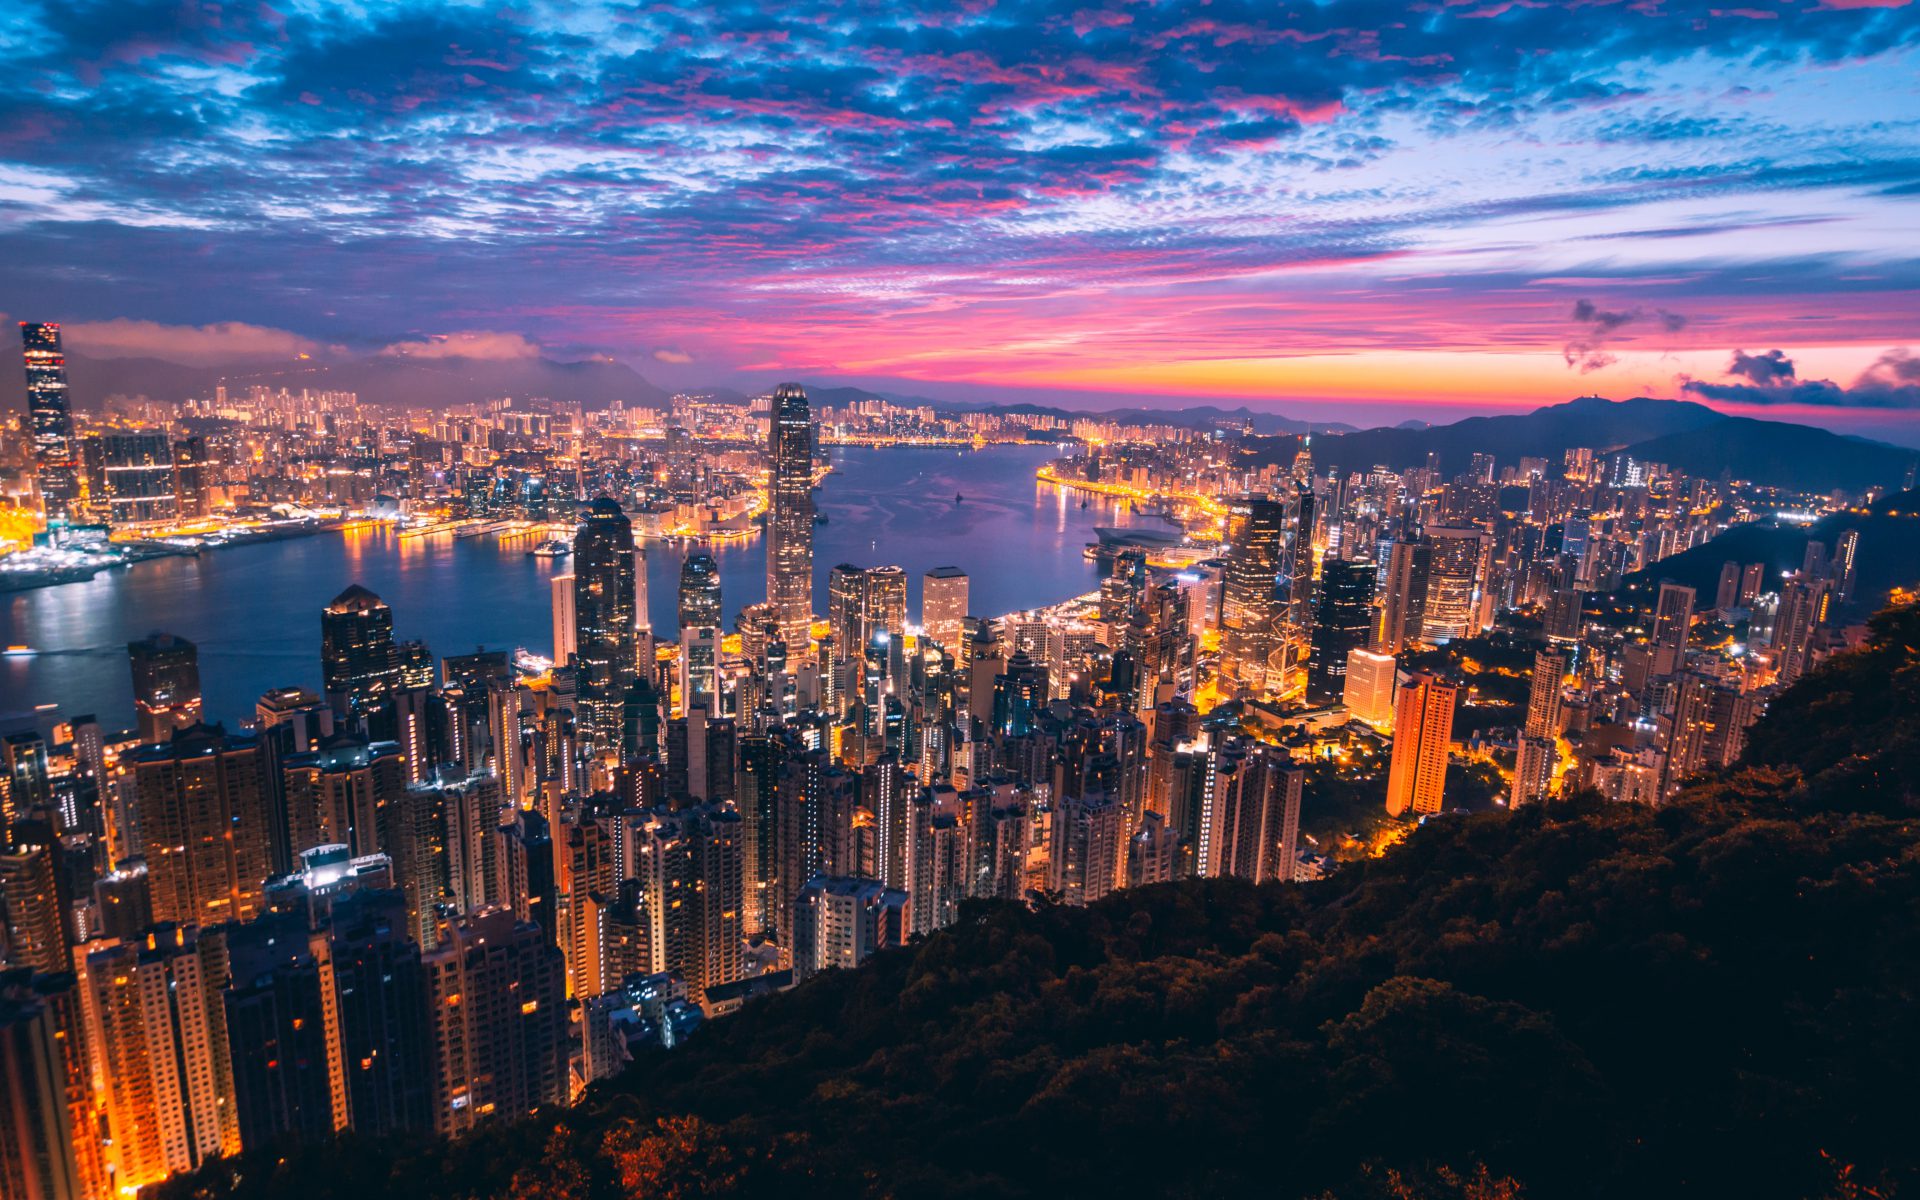 هنگ کنگ می تواند تجارت کریپتو سرمایه گذار خرد را از طریق مشاوره عمومی قانونی کند